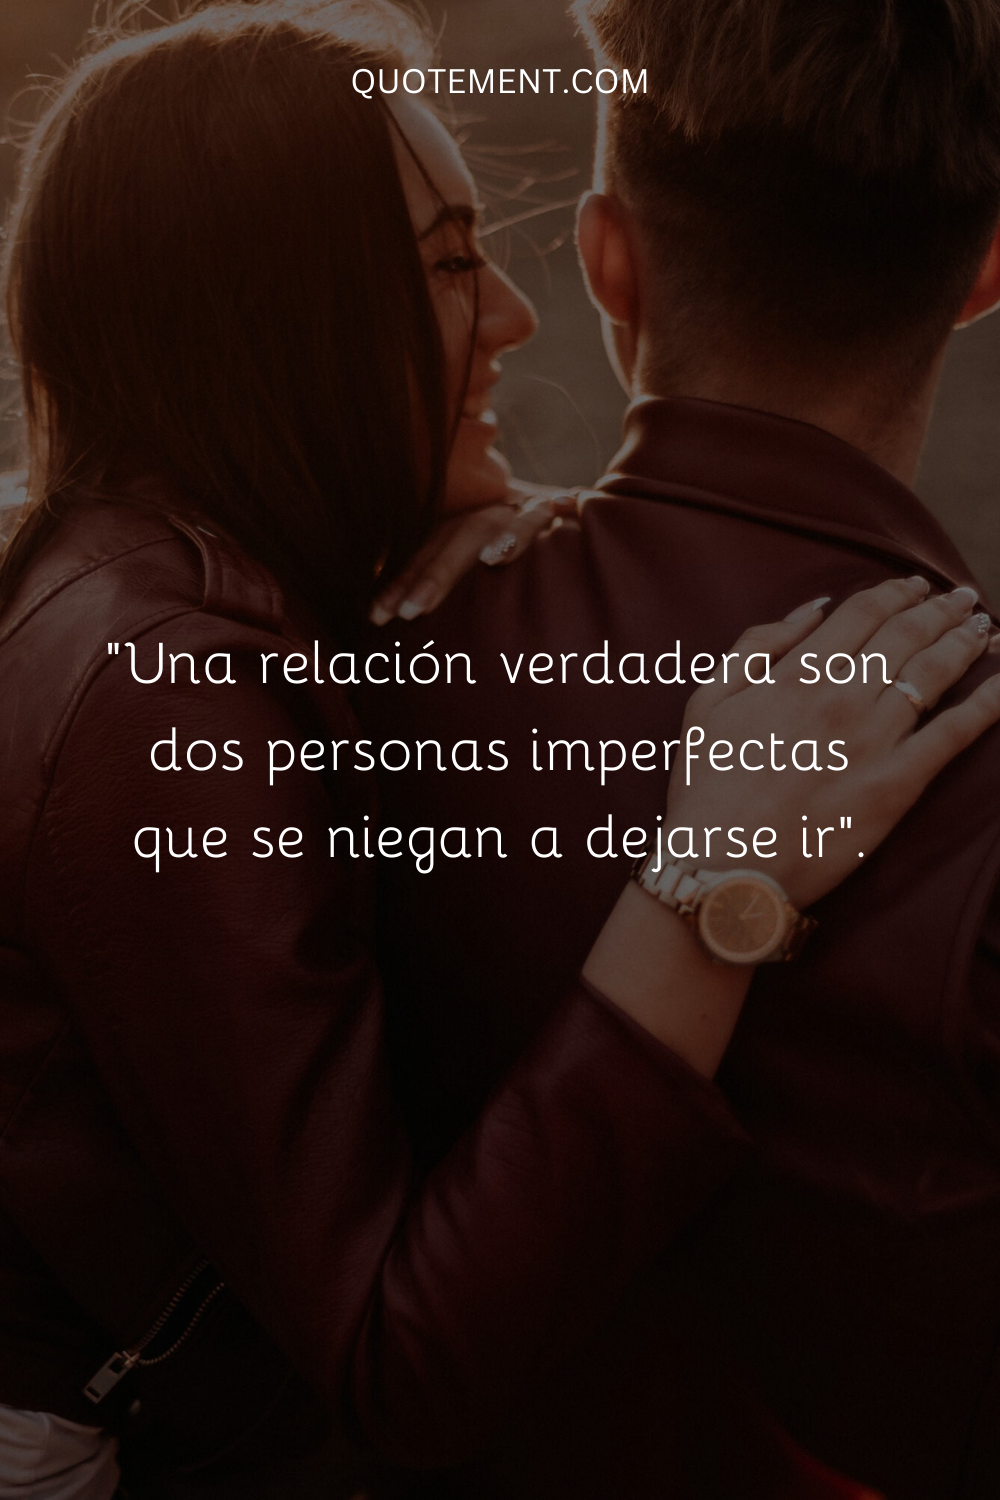 "Una relación verdadera son dos personas imperfectas que se niegan a dejarse ir".